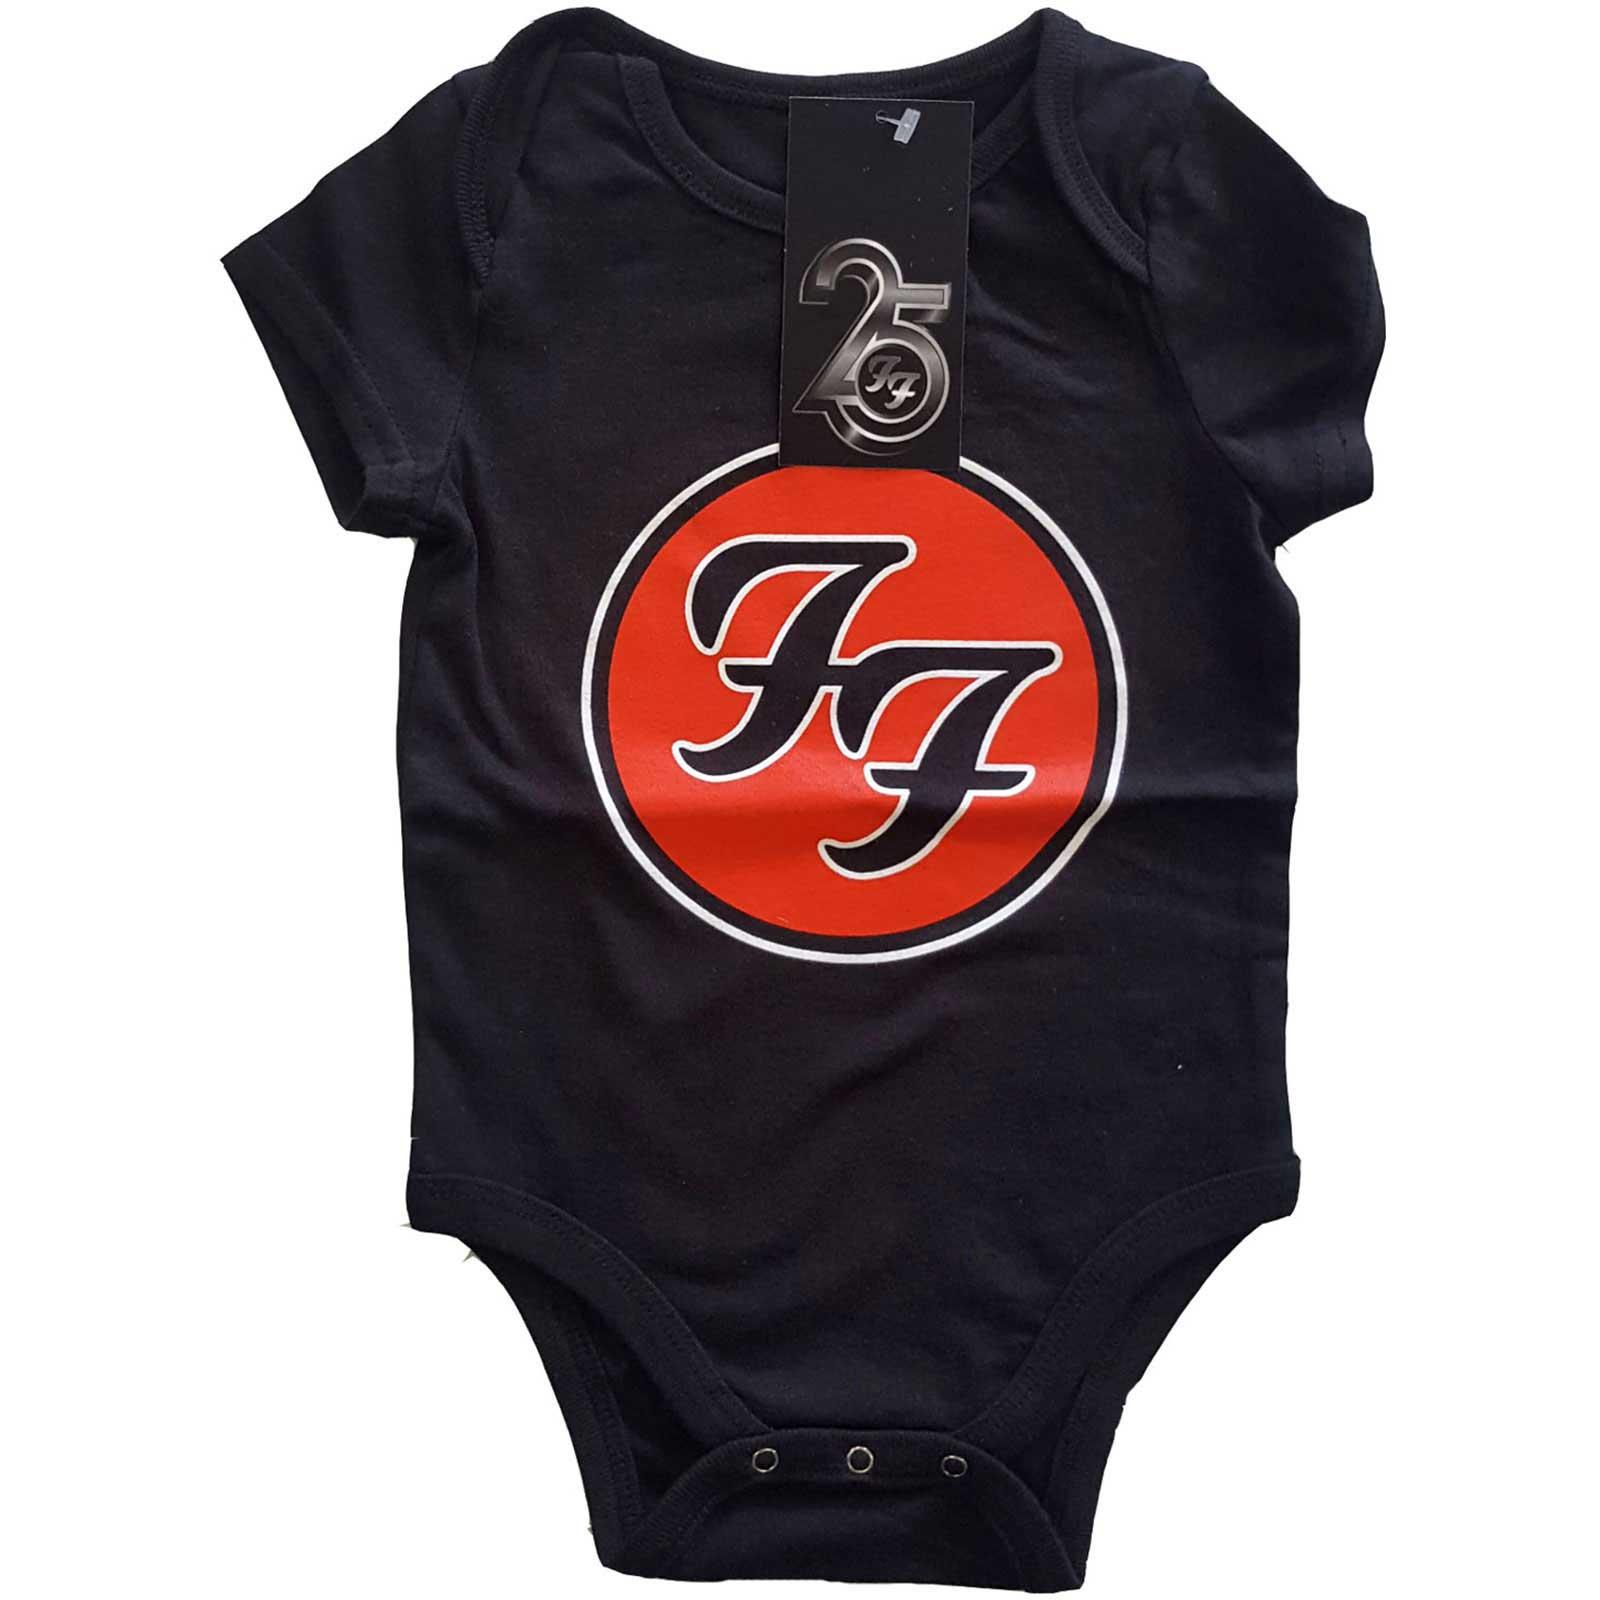 (フー・ファイターズ) Foo Fighters オフィシャル商品 ベビー・赤ちゃん ロゴ ボディースーツ 半袖 ロンパース 【海外通販】